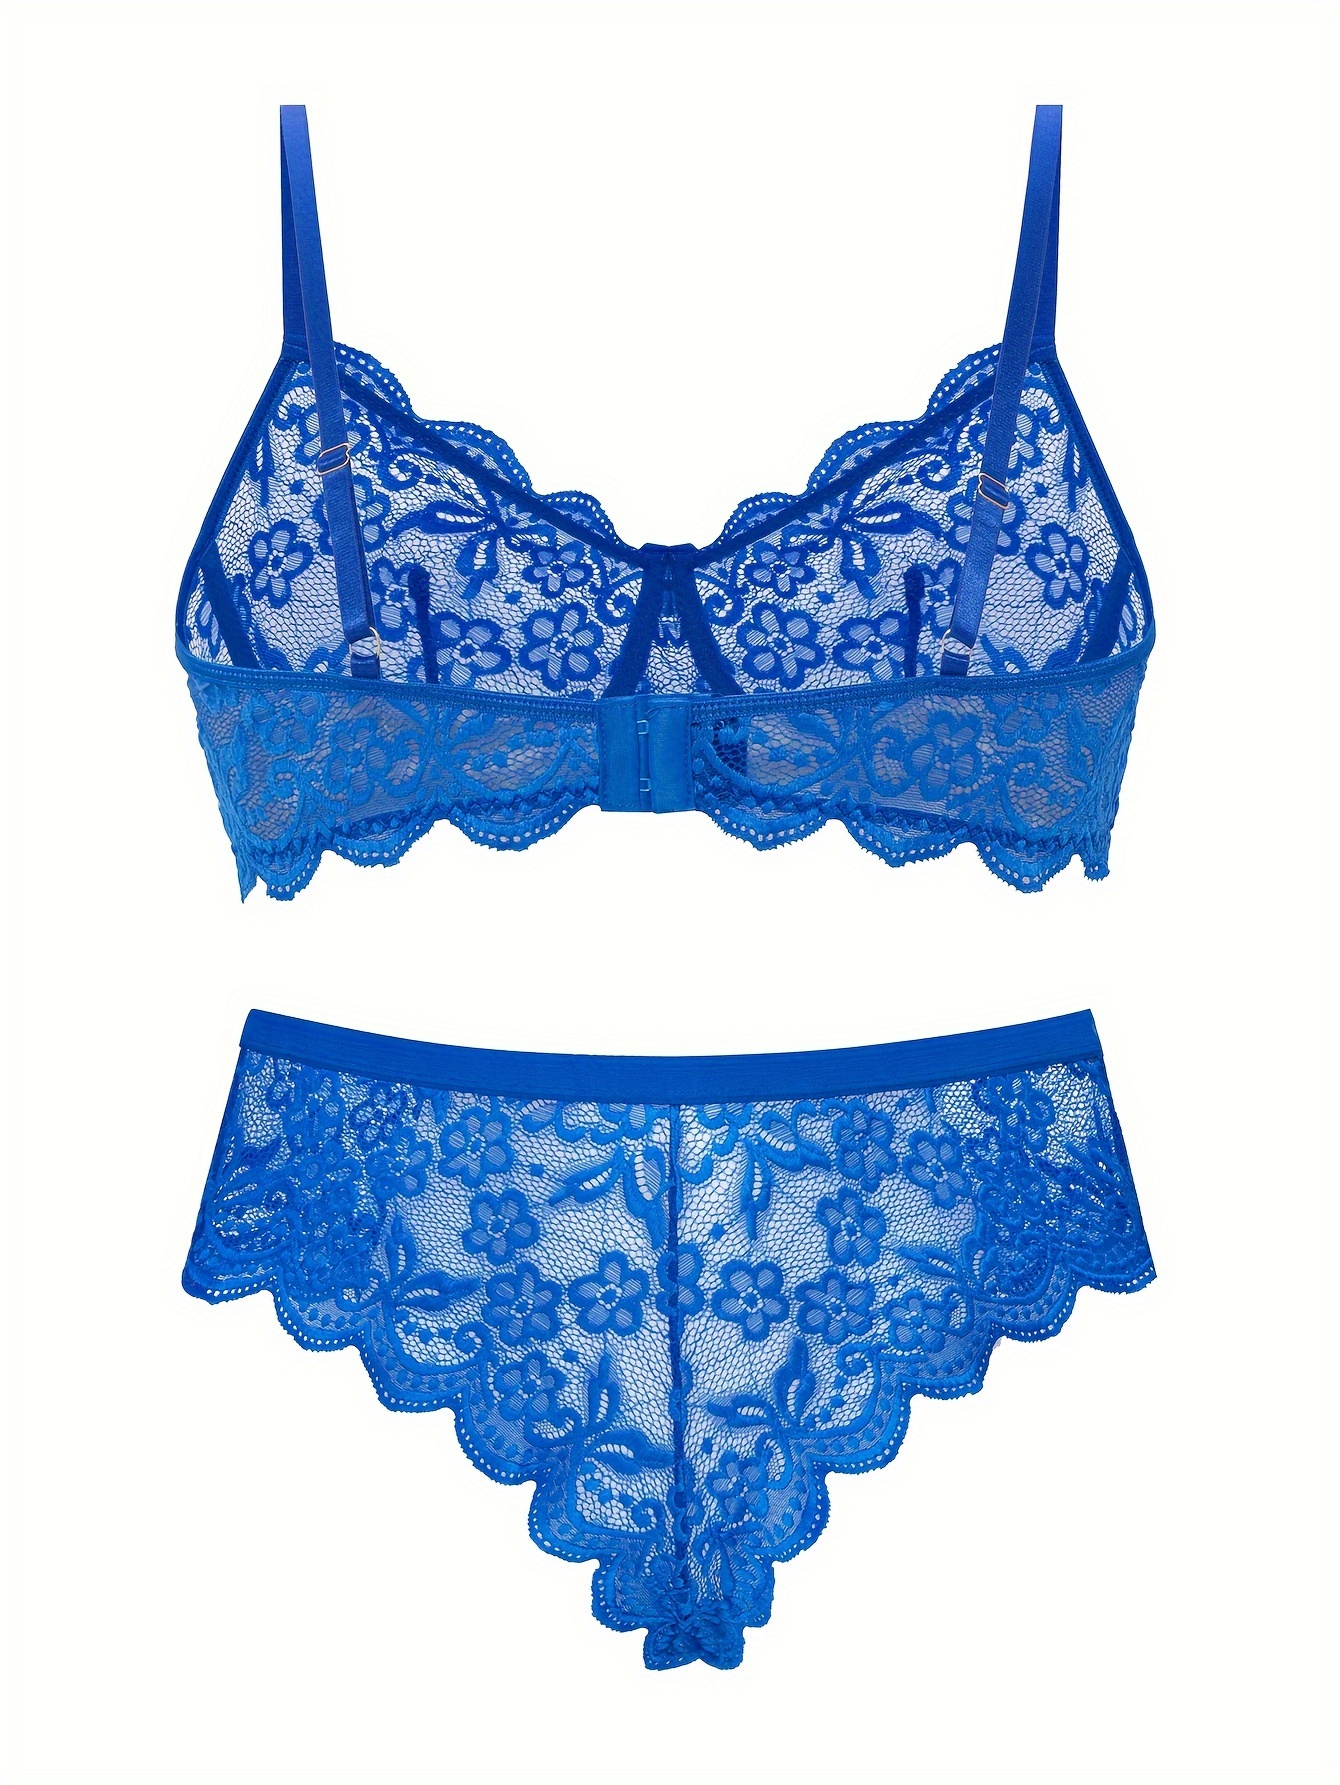 XOUVY Floral Lace Full Cup Minimizer Bra Set Plus Size 38-48 D Cup  Underwear Set Sexy Lingerie Women Thong Set (Color : Blue, Size : 38D or  85D) (Blue 38D or 85D) 